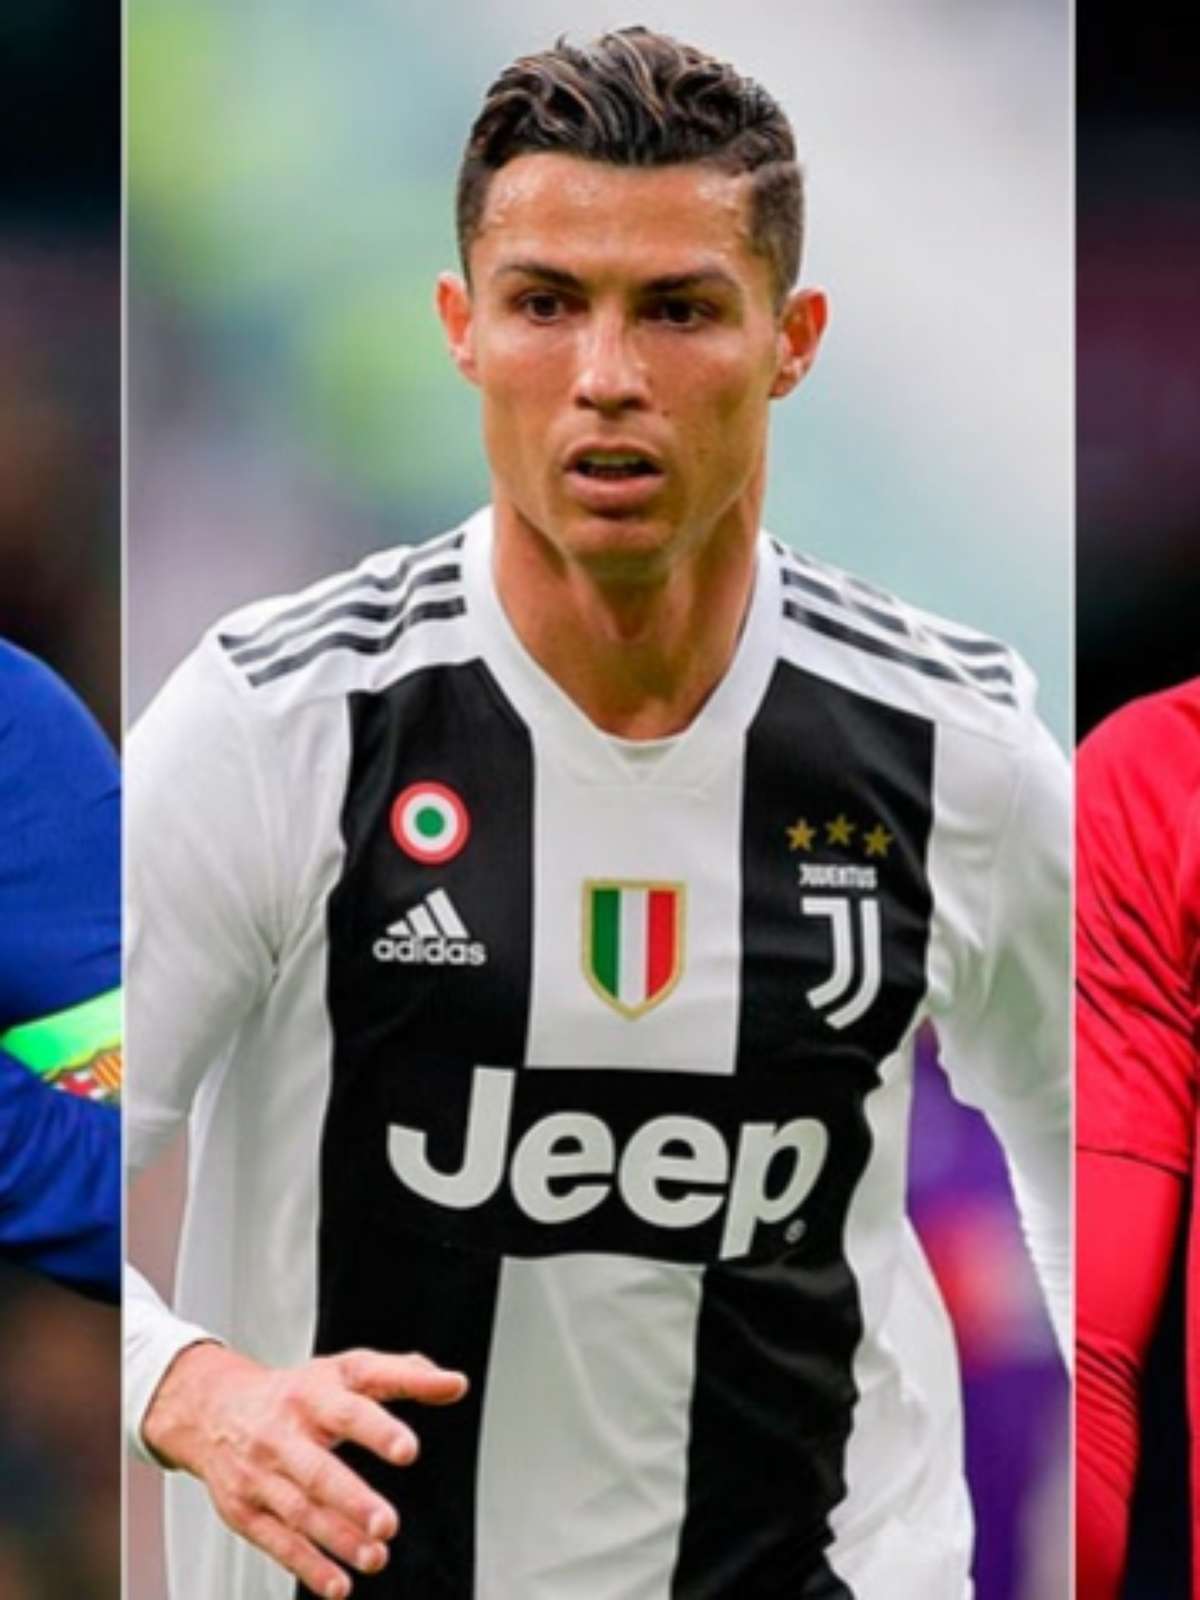 É hoje! Messi, Van Dijk e CR7 são favoritos na disputa da Bola de Ouro -  Lance - R7 Futebol